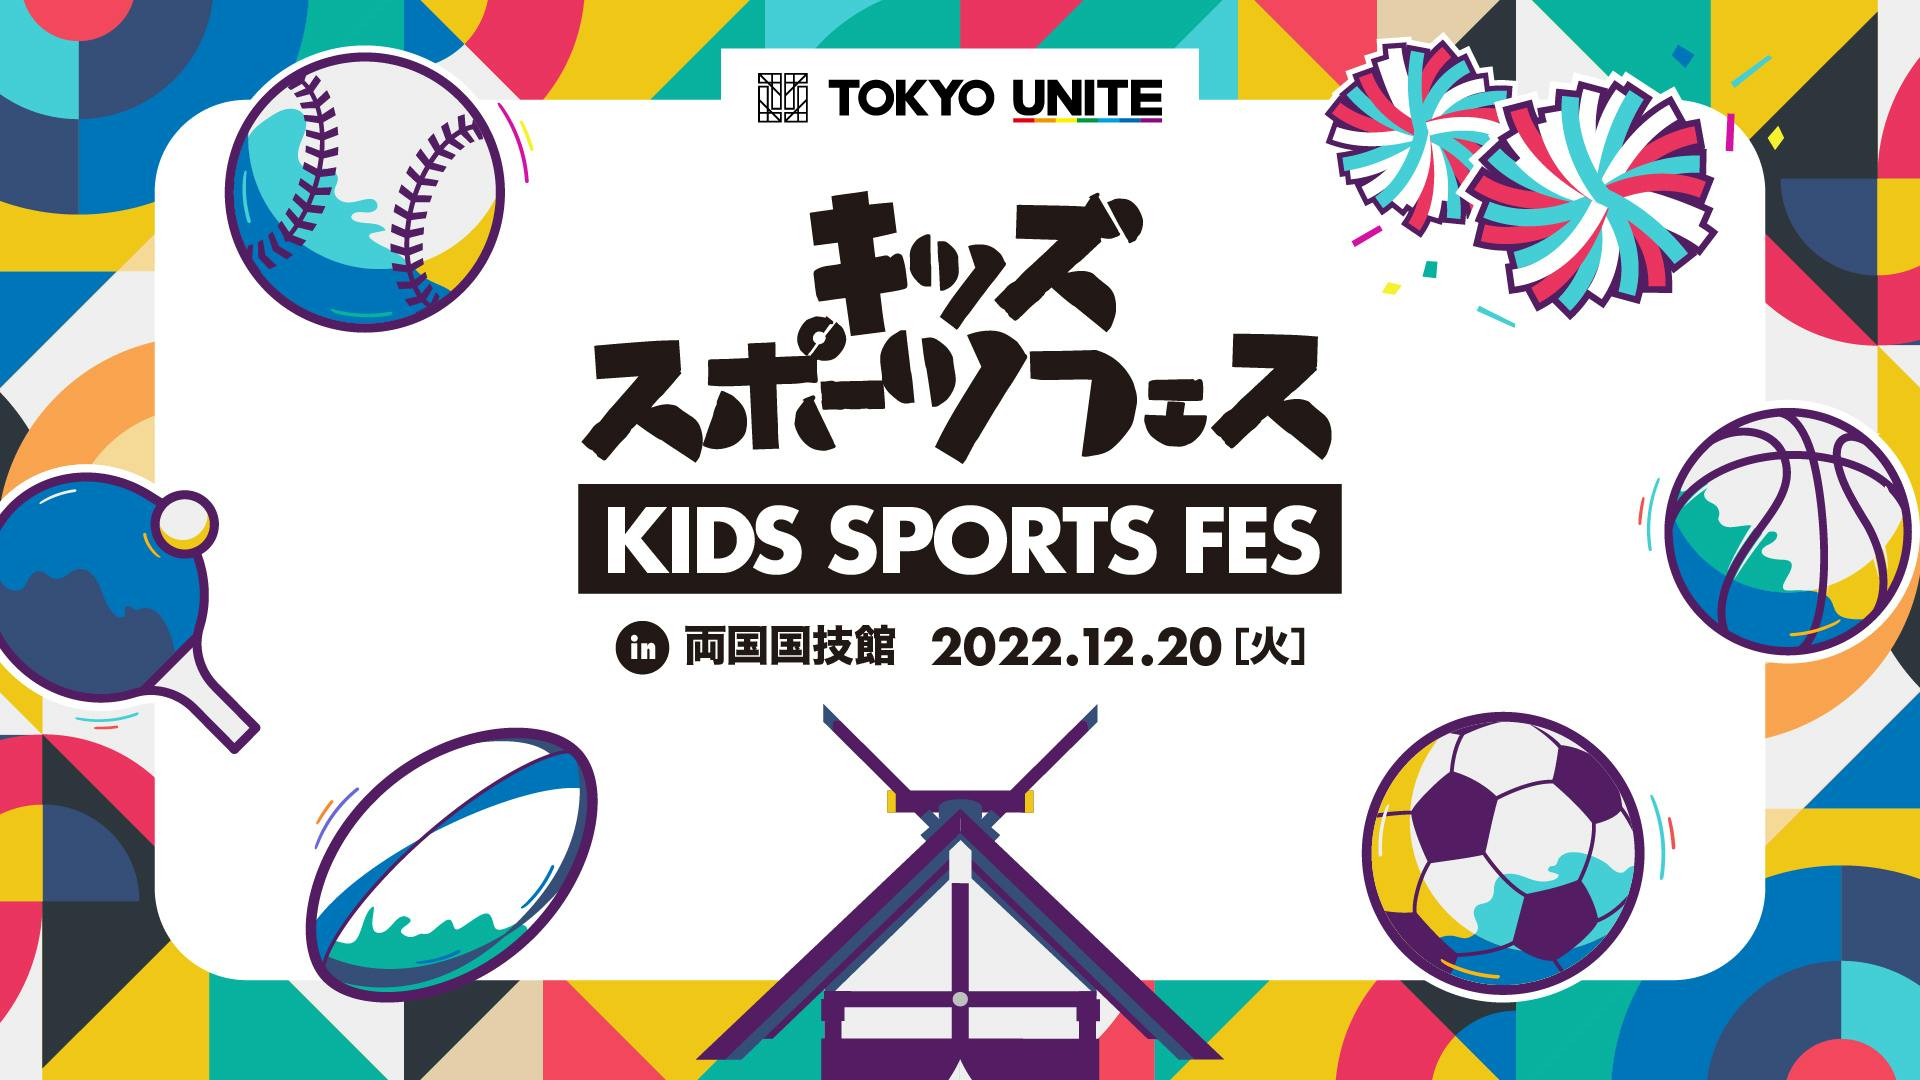 小学生向けのマルチスポーツ体験イベント（参加無料）<br>「TOKYO UNITE キッズスポーツフェス in両国国技館」を開催<br>鶴竜親方、ジャイアンツ選手らもゲストで来場！